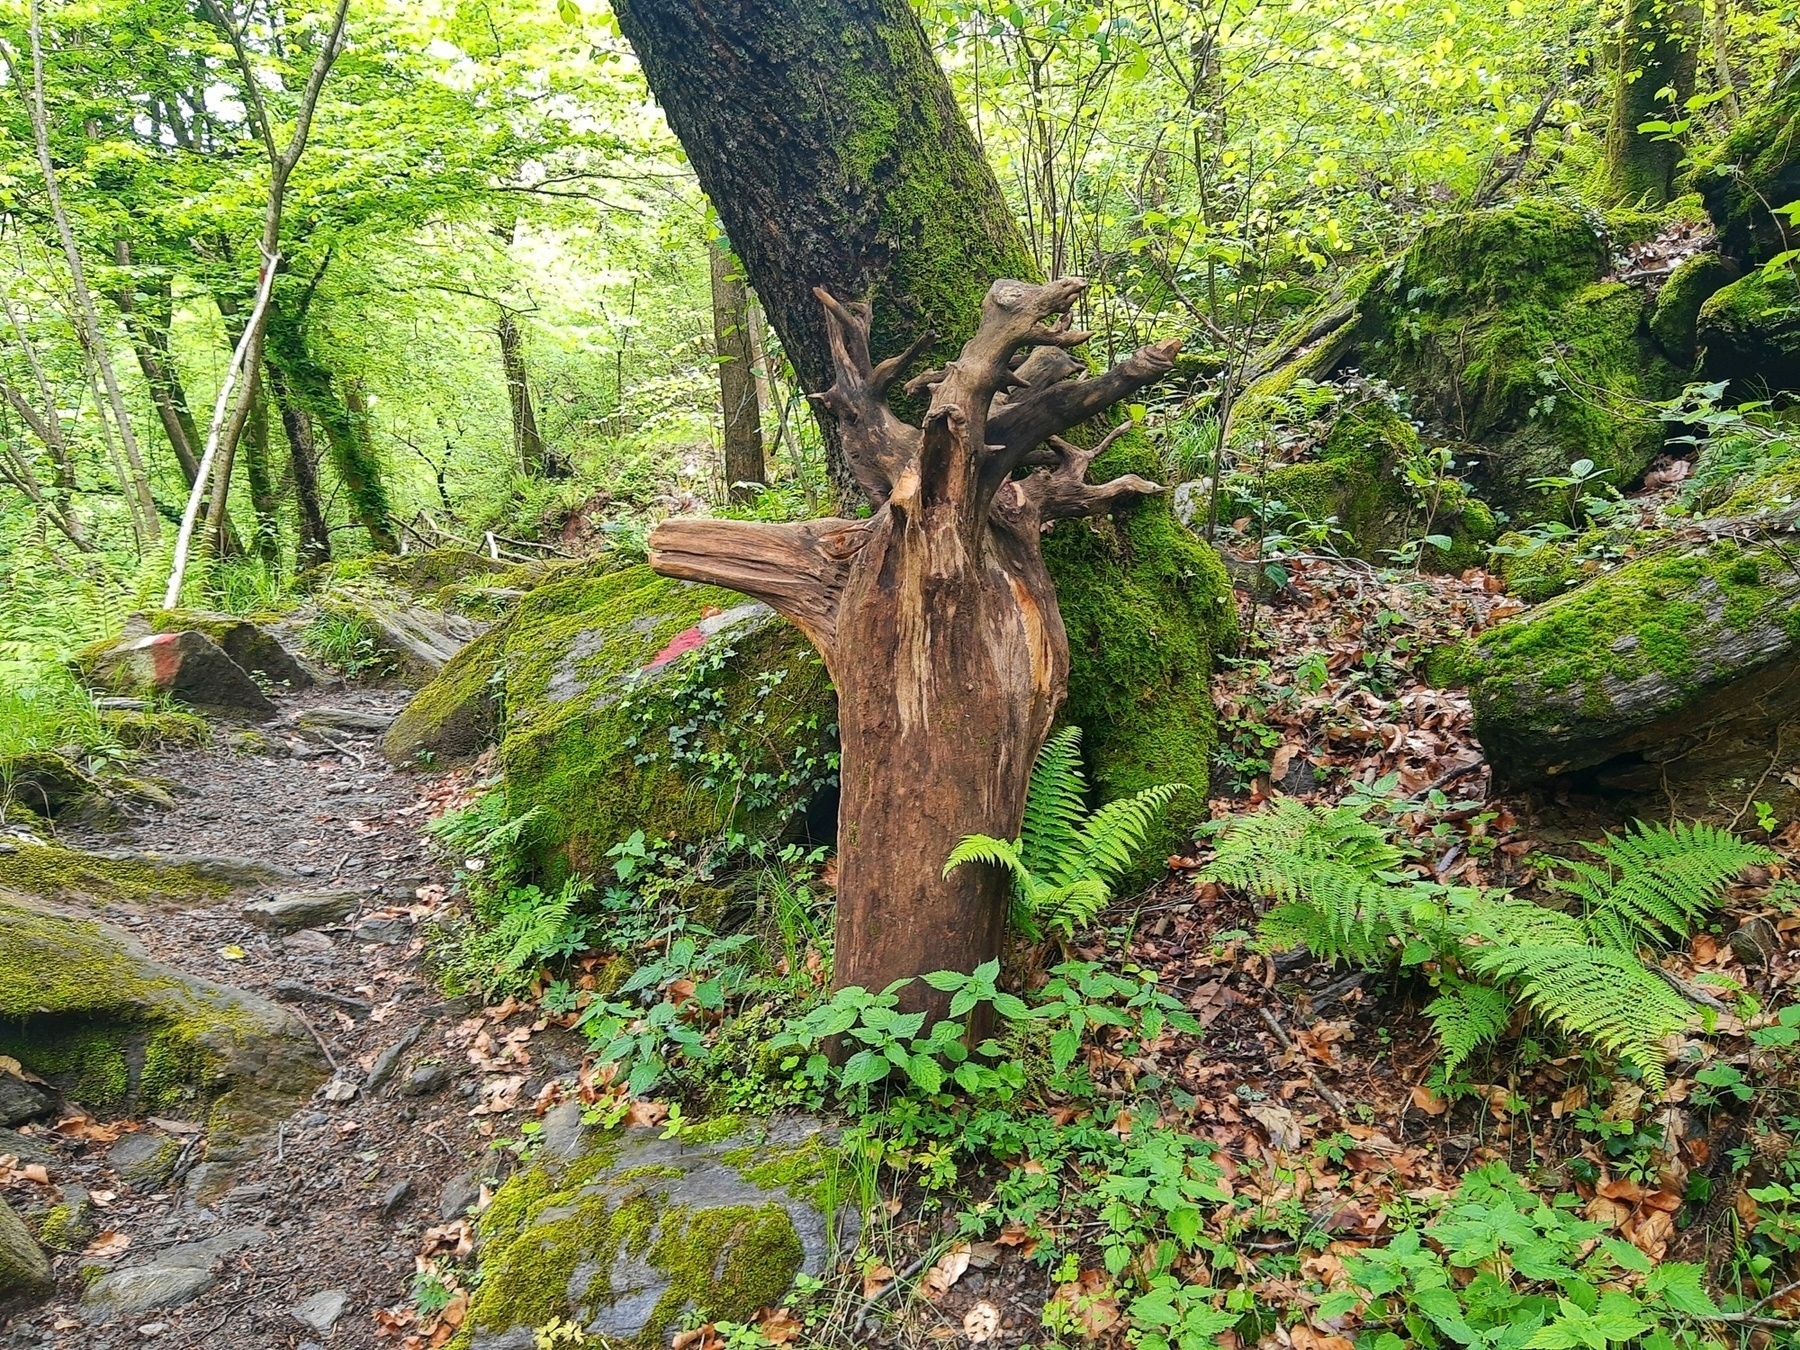 Tronco di legno appoggiato ad un albero lungo il sentiero che pare essere un cervo.